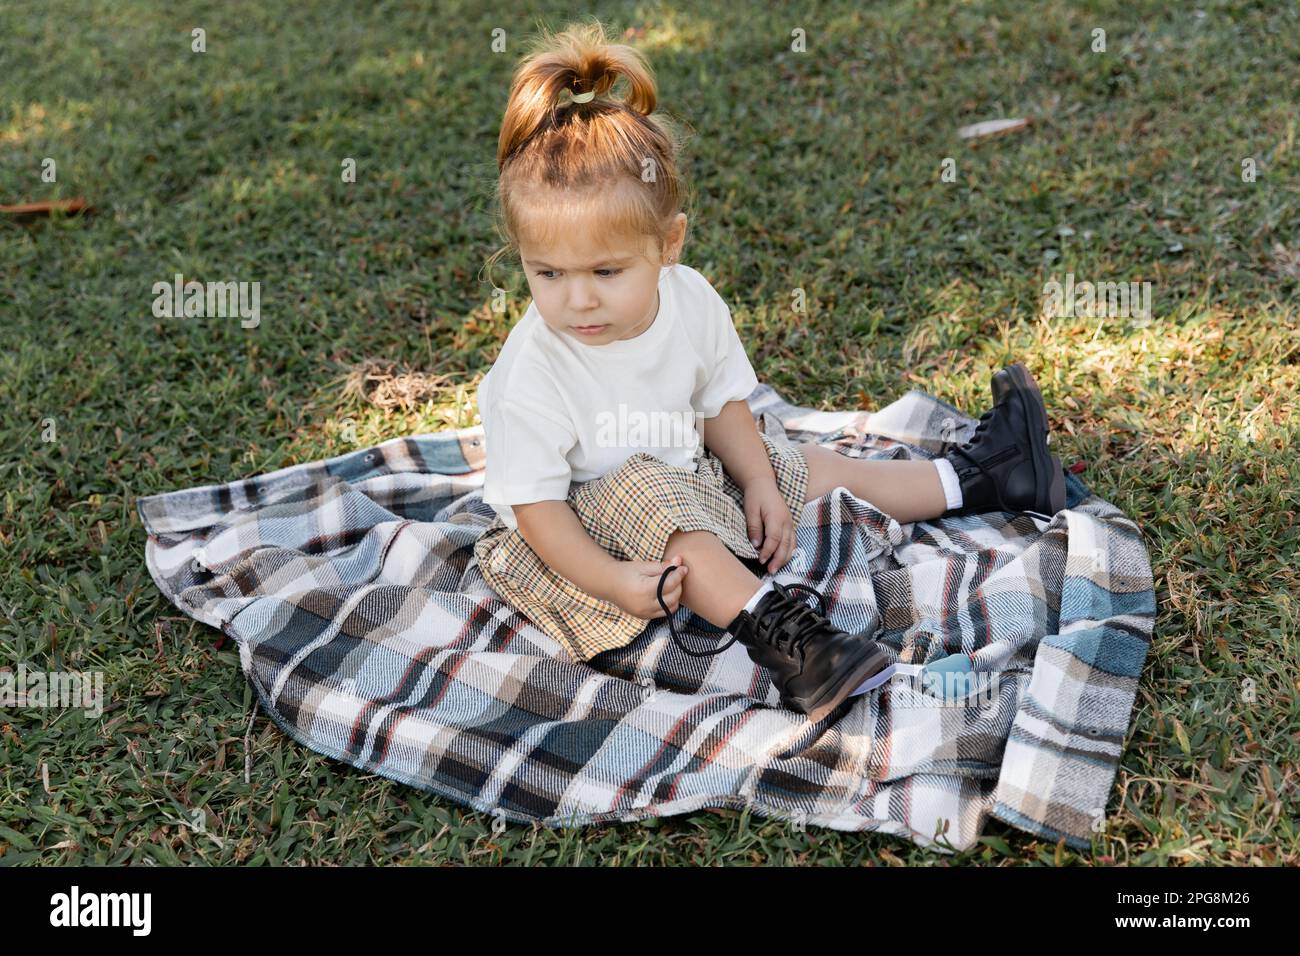 bébé fille en jupe à carreaux et bottes assis sur une couverture pendant le  pique-nique, image de stock Photo Stock - Alamy